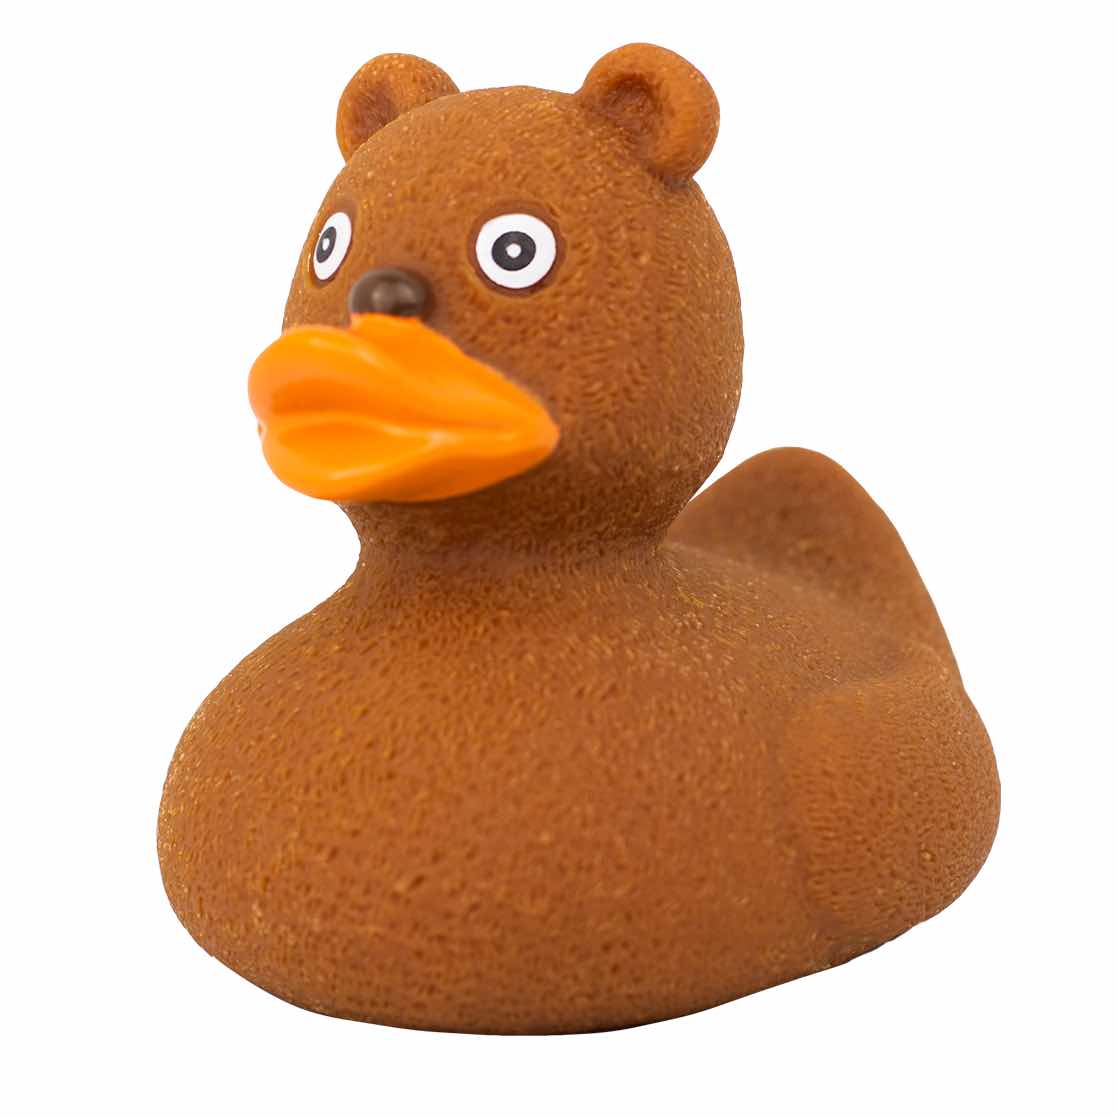 Productie Negen laag Teddy Rubber Duck | Buy premium rubber ducks online - world wide delivery!